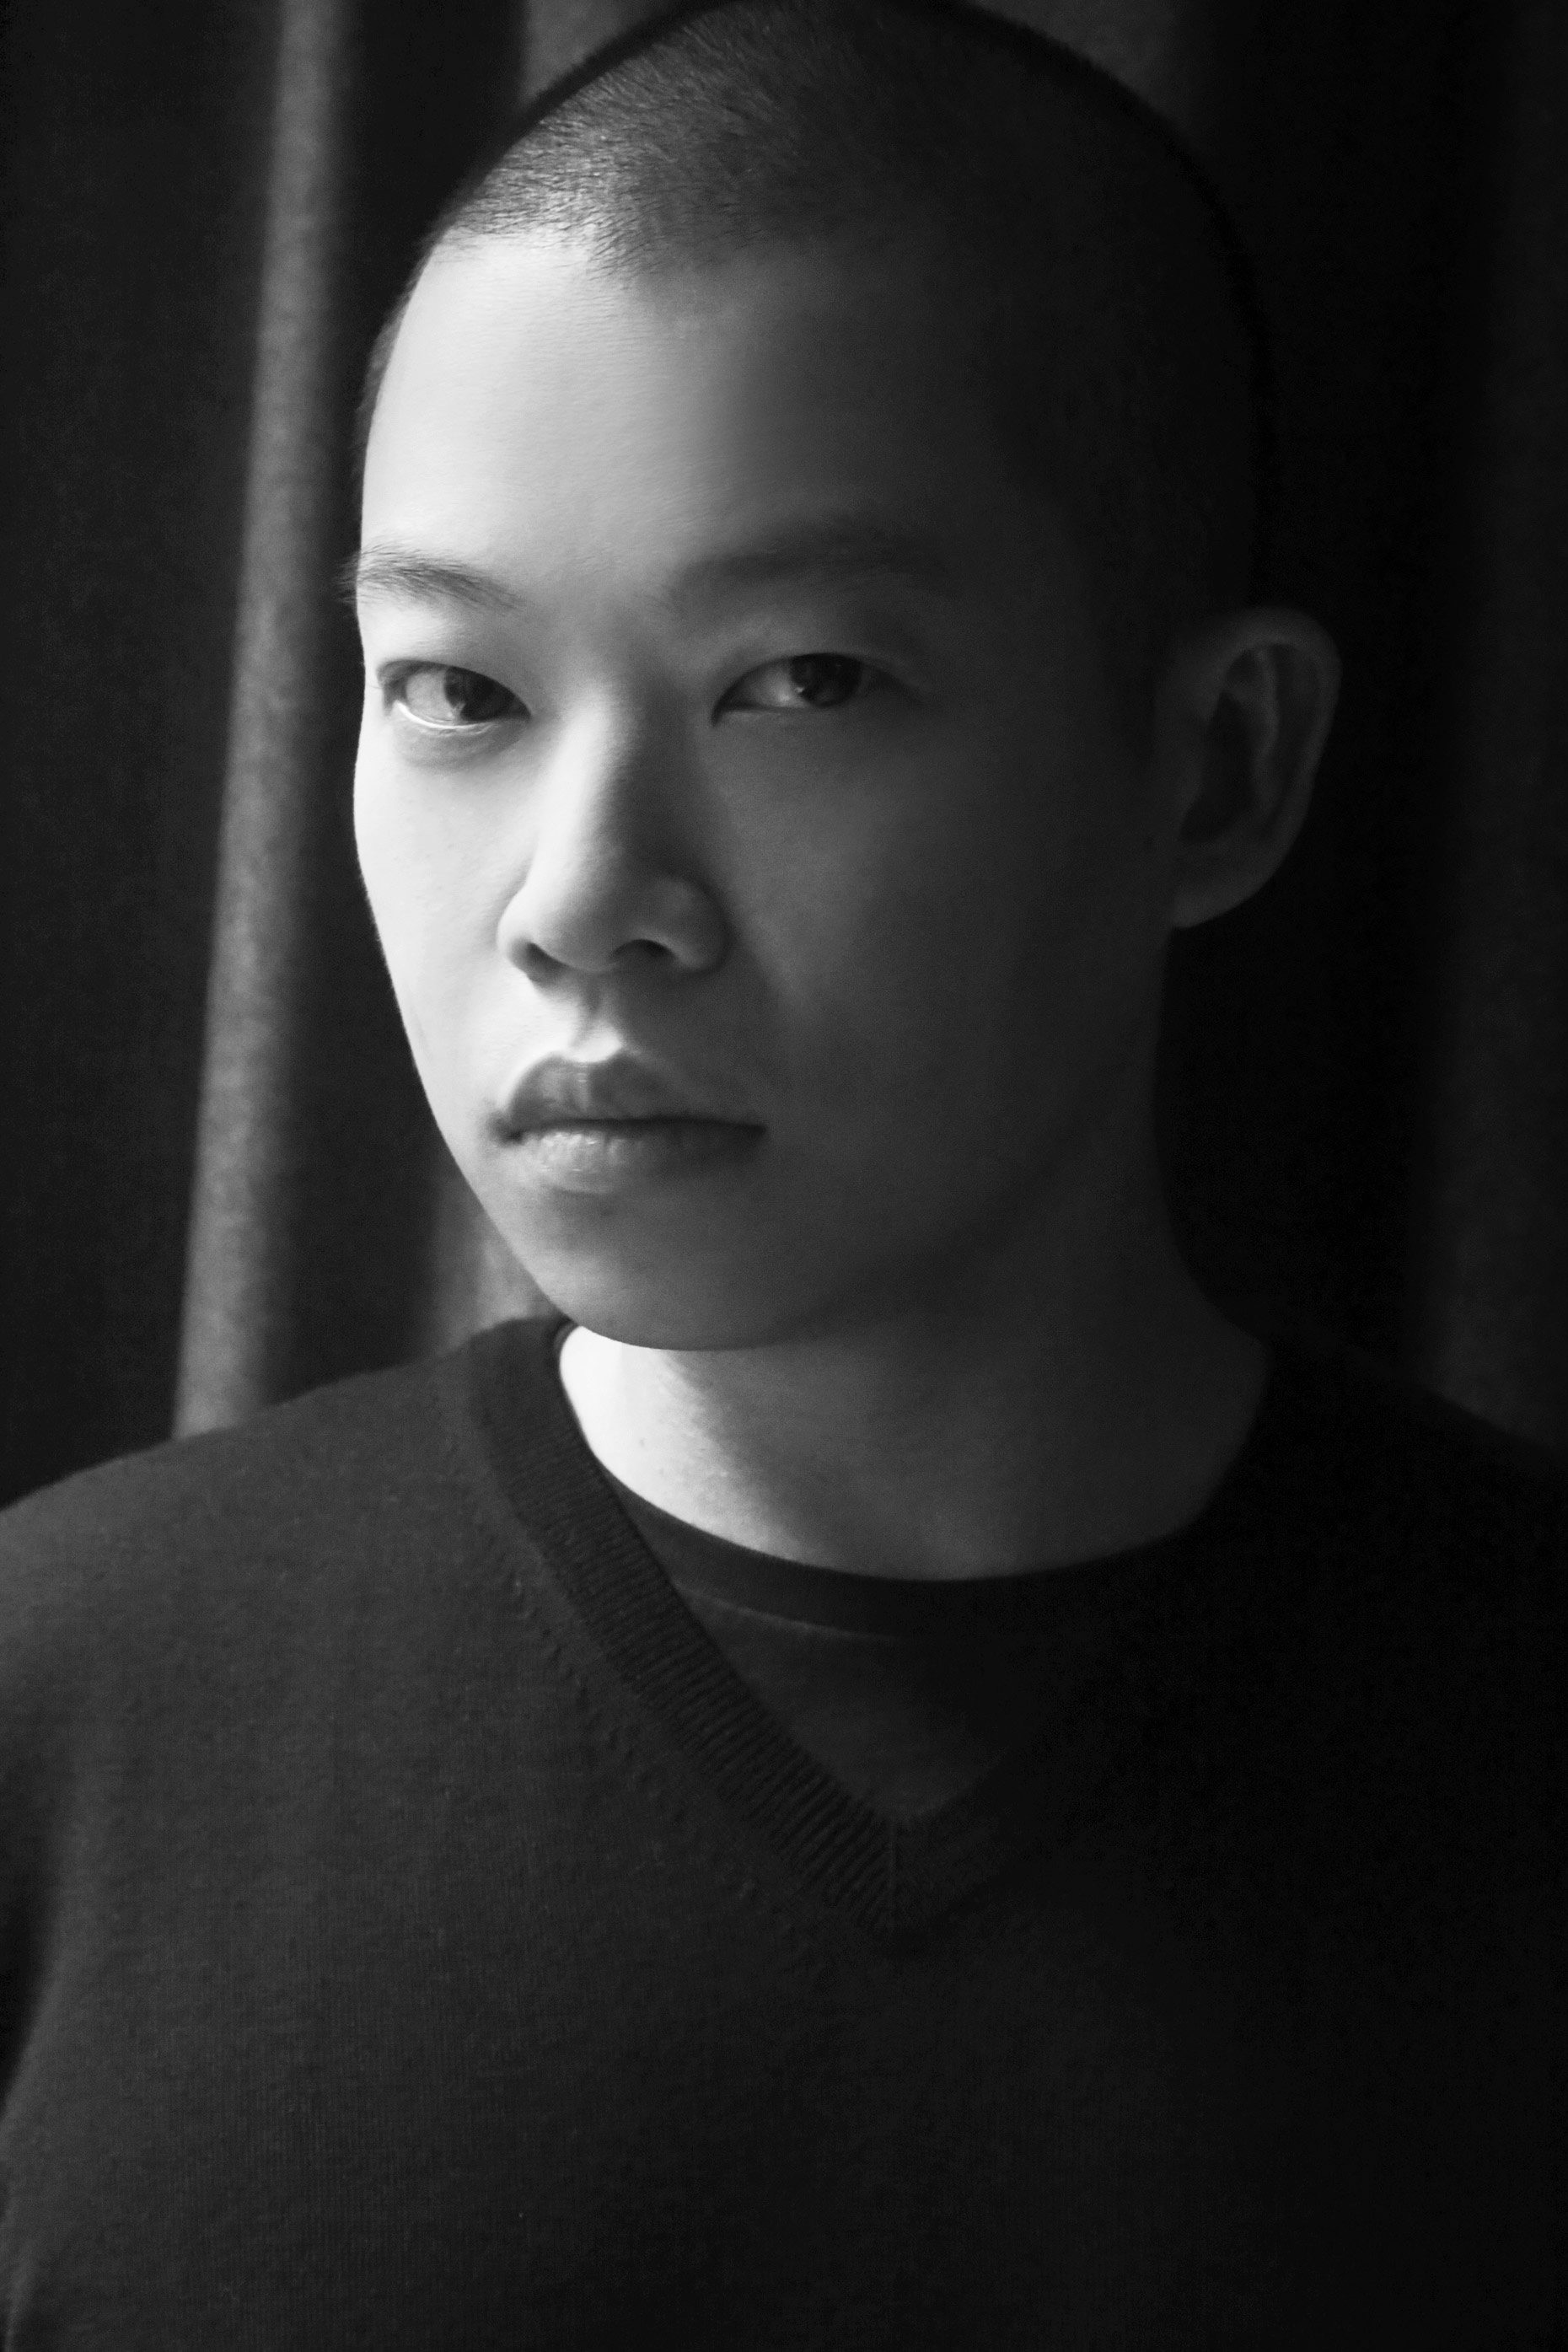 Kelly-Stuart-Portraits-Jason-Wu-The-Editorialist-b